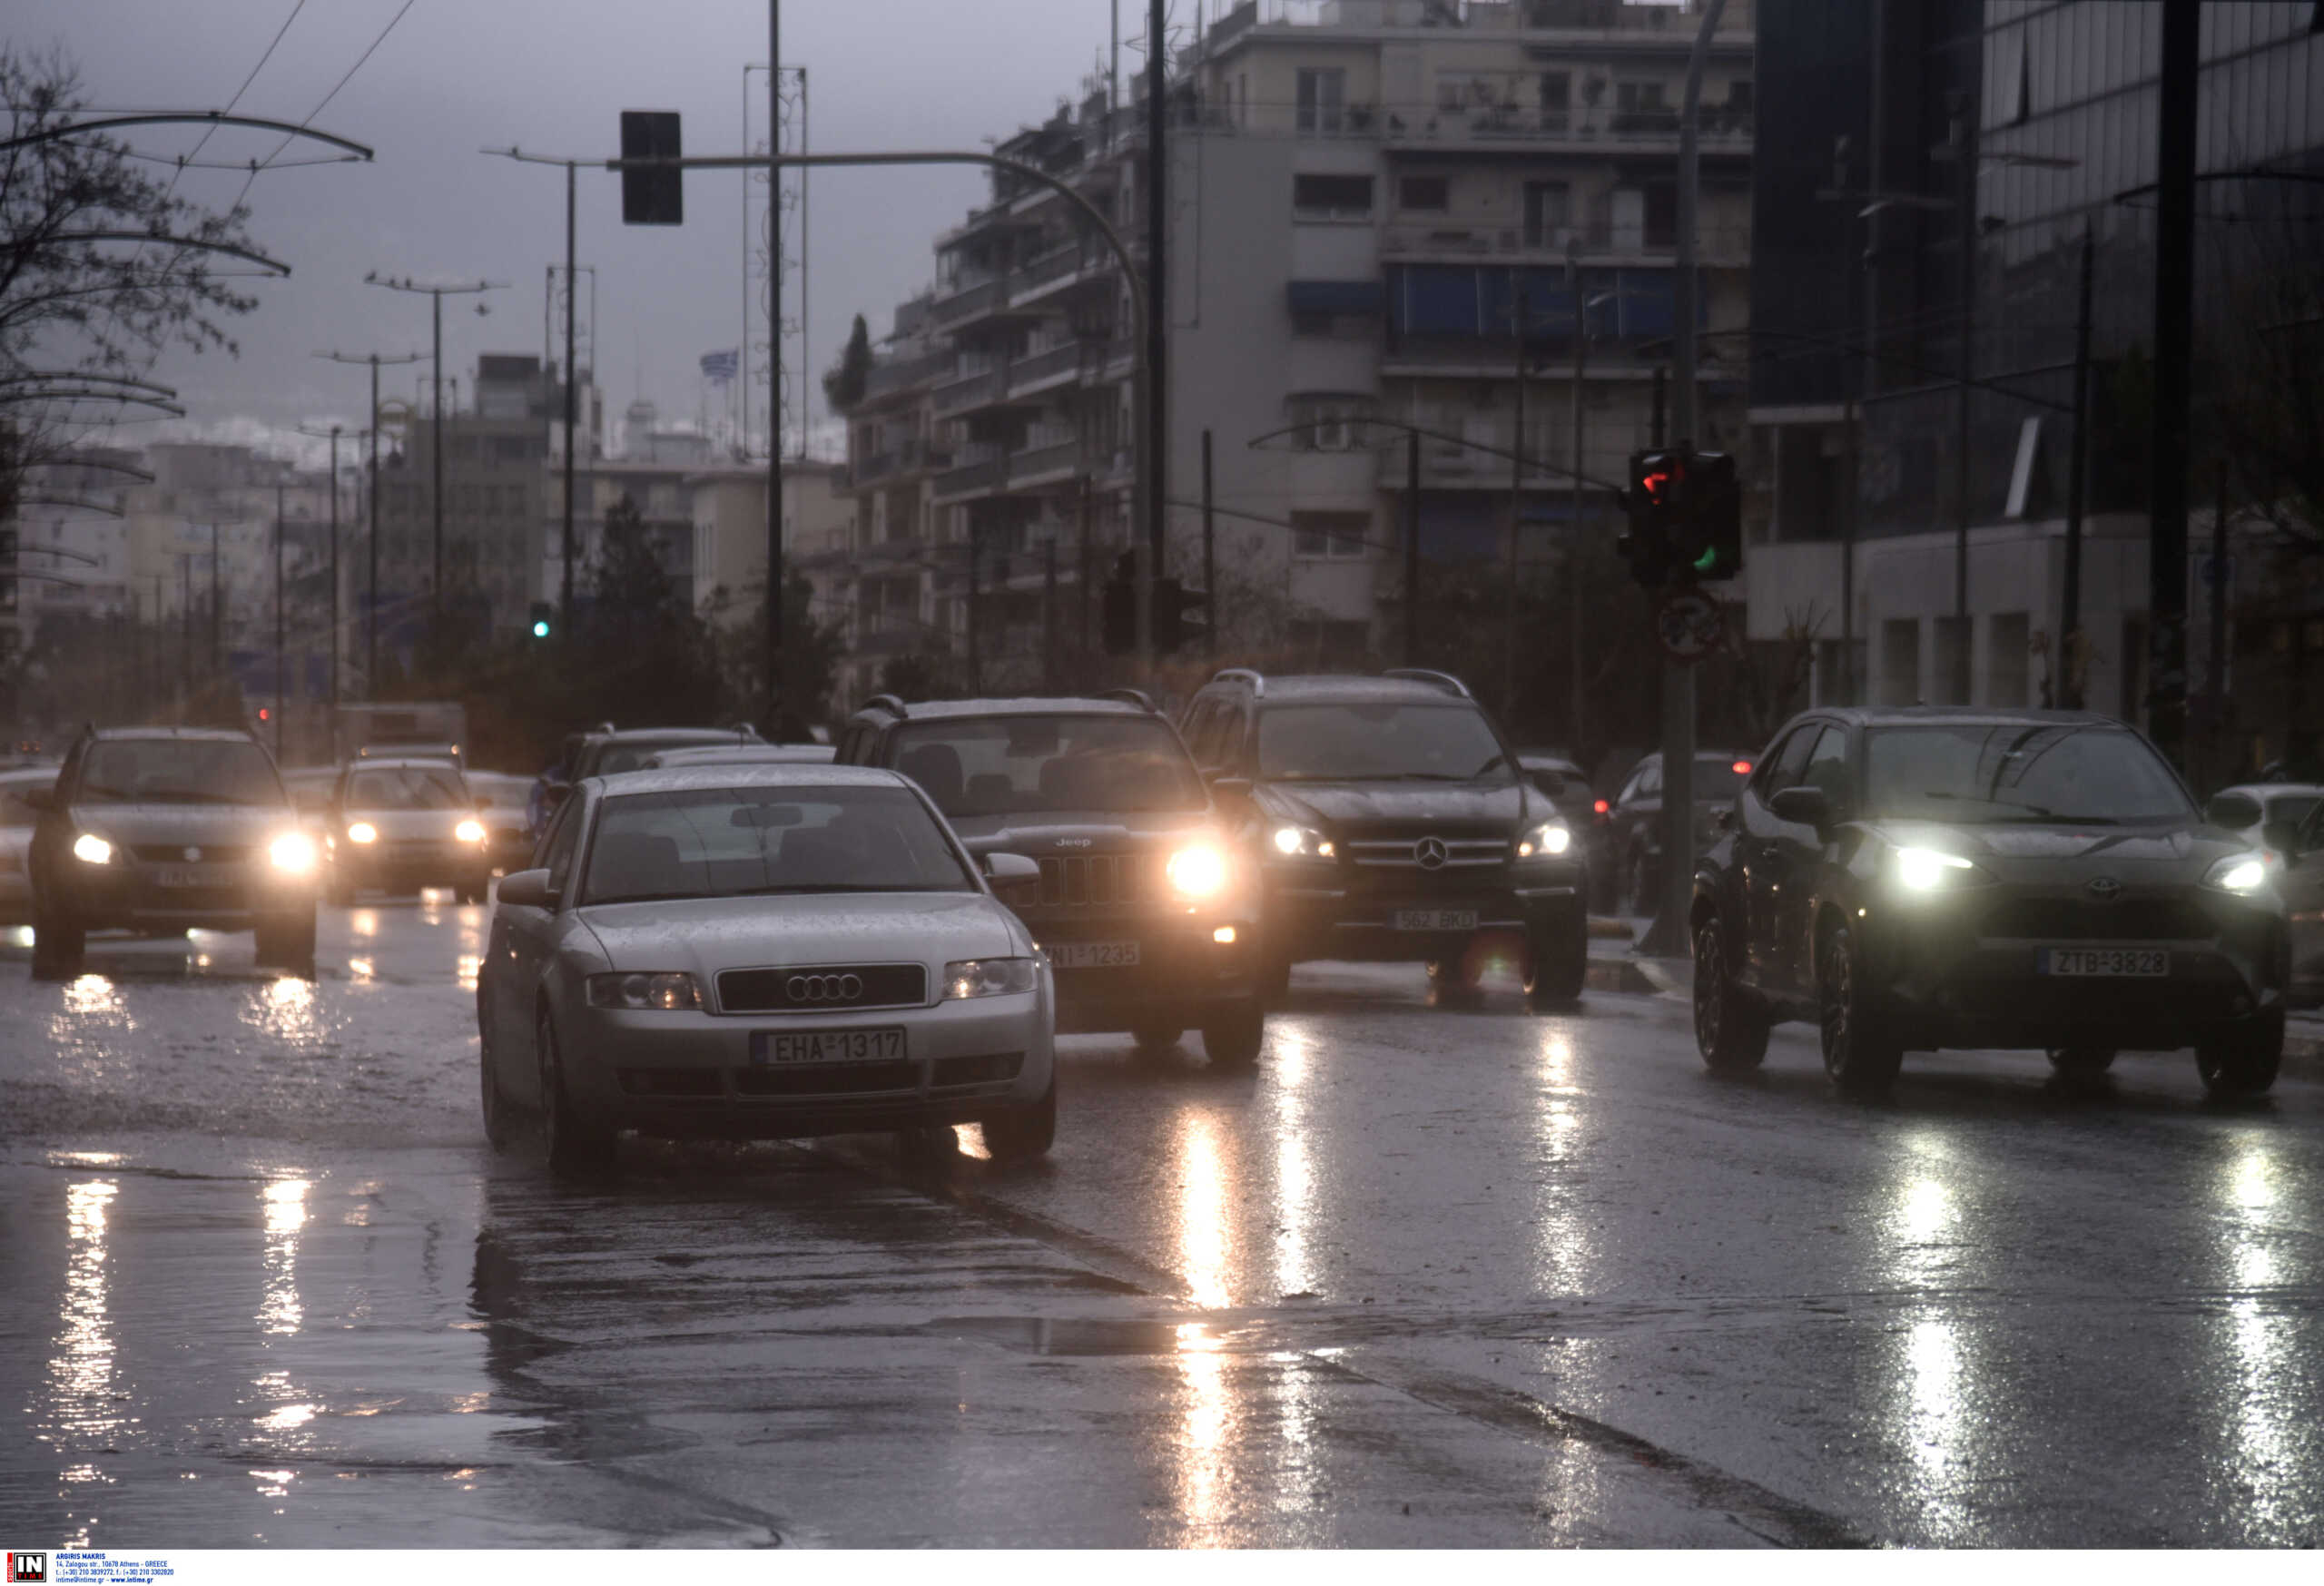 Κίνηση στους δρόμους: Μποτιλιάρισμα σε όλη την Αθήνα – Κλειστοί δρόμοι, απεργία στο Μετρό και βροχή